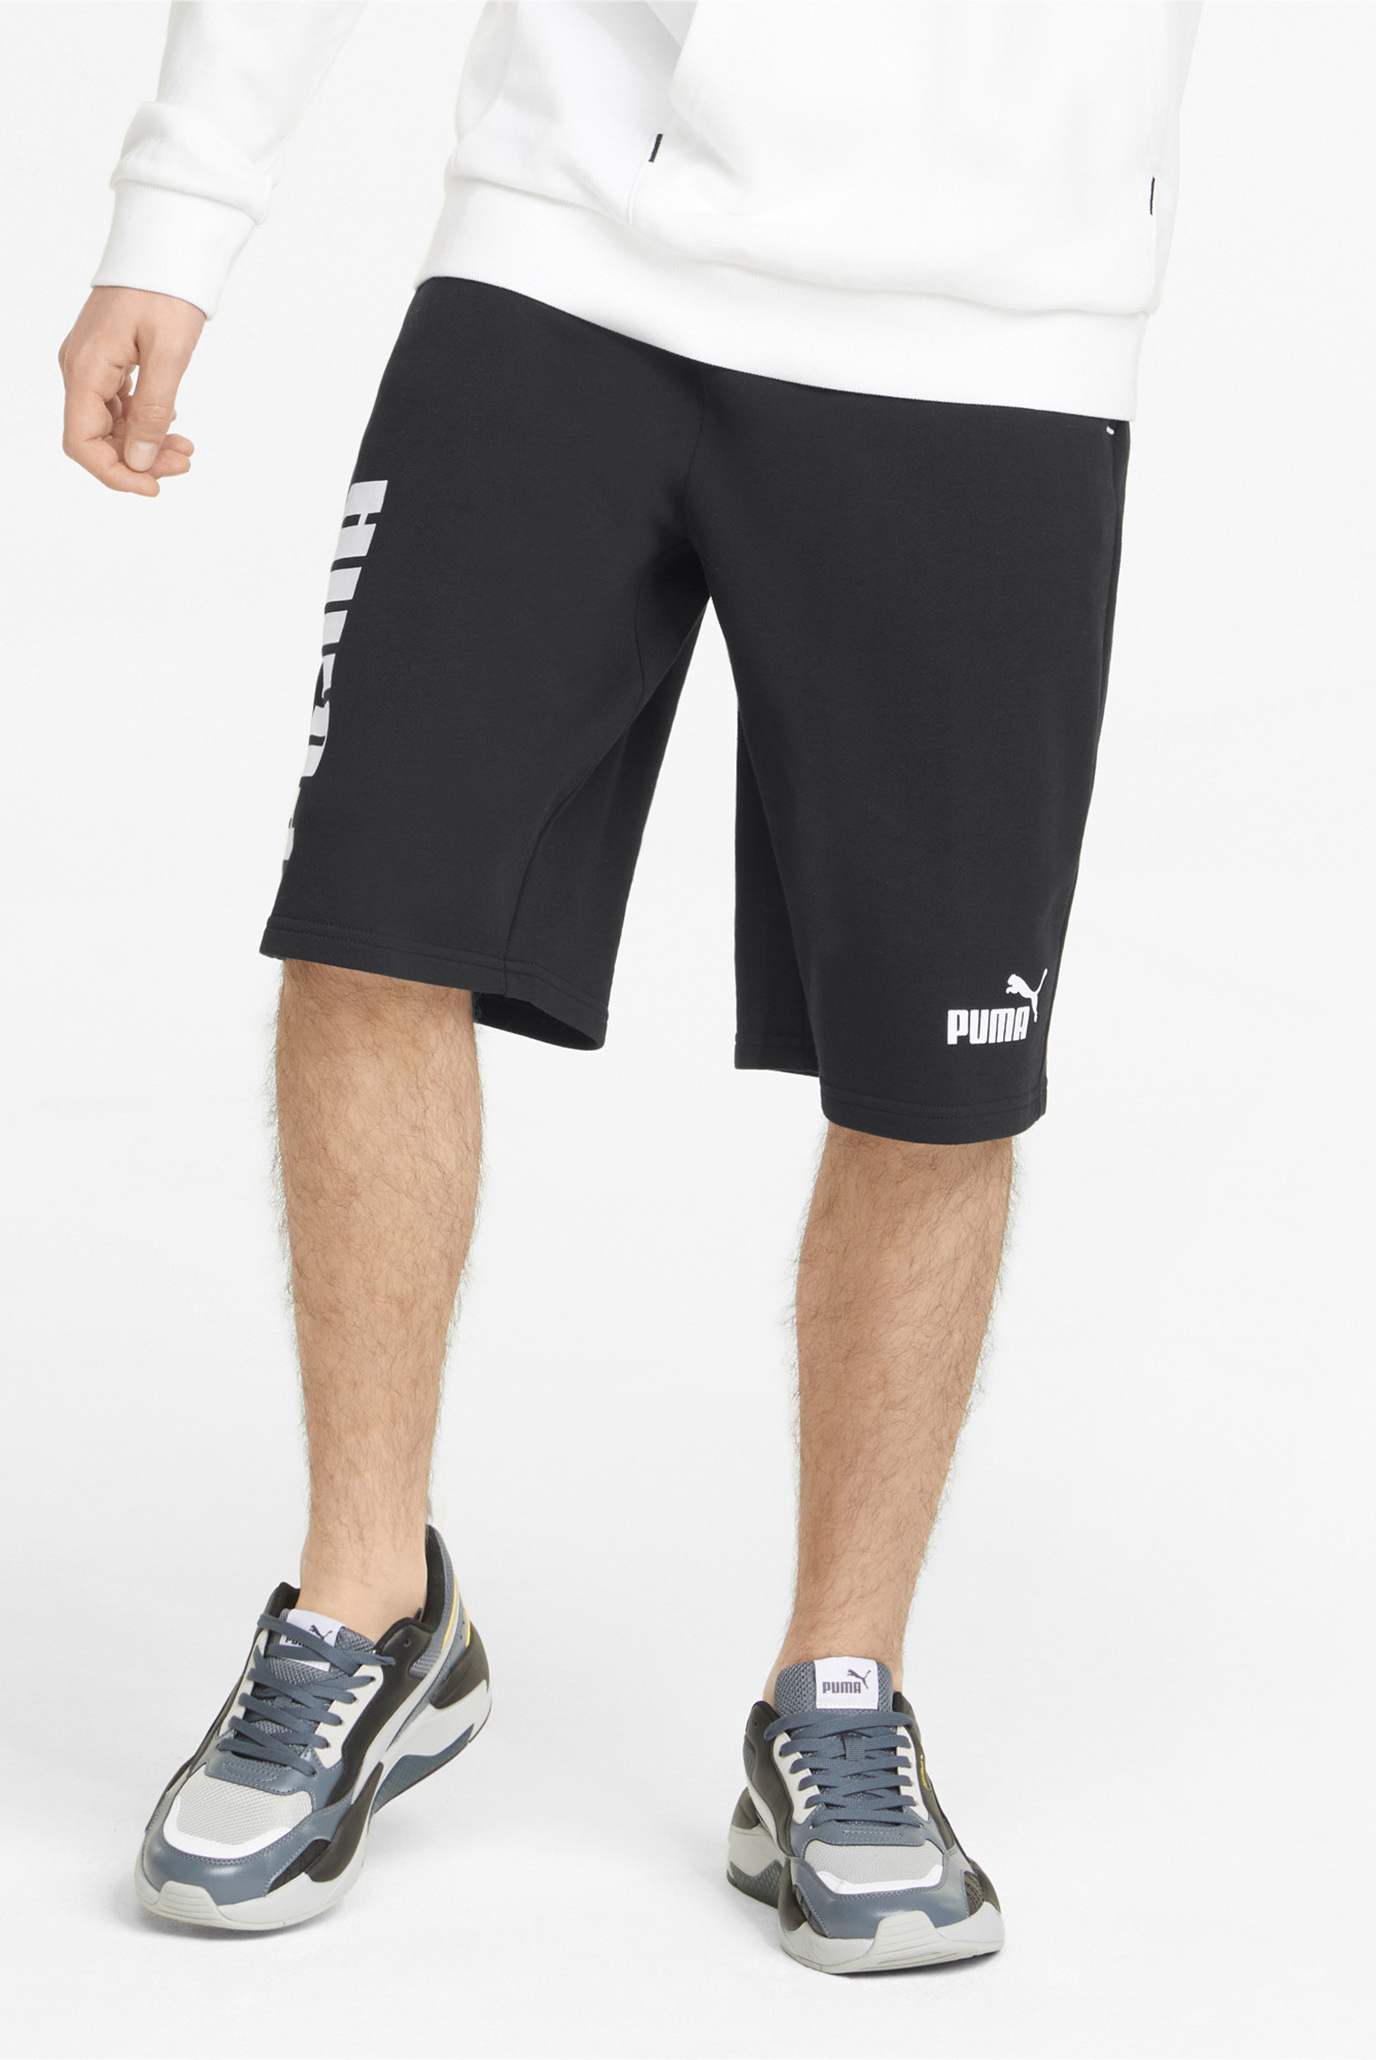 Шорты PUMA Power Colourblocked Men's Shorts 1